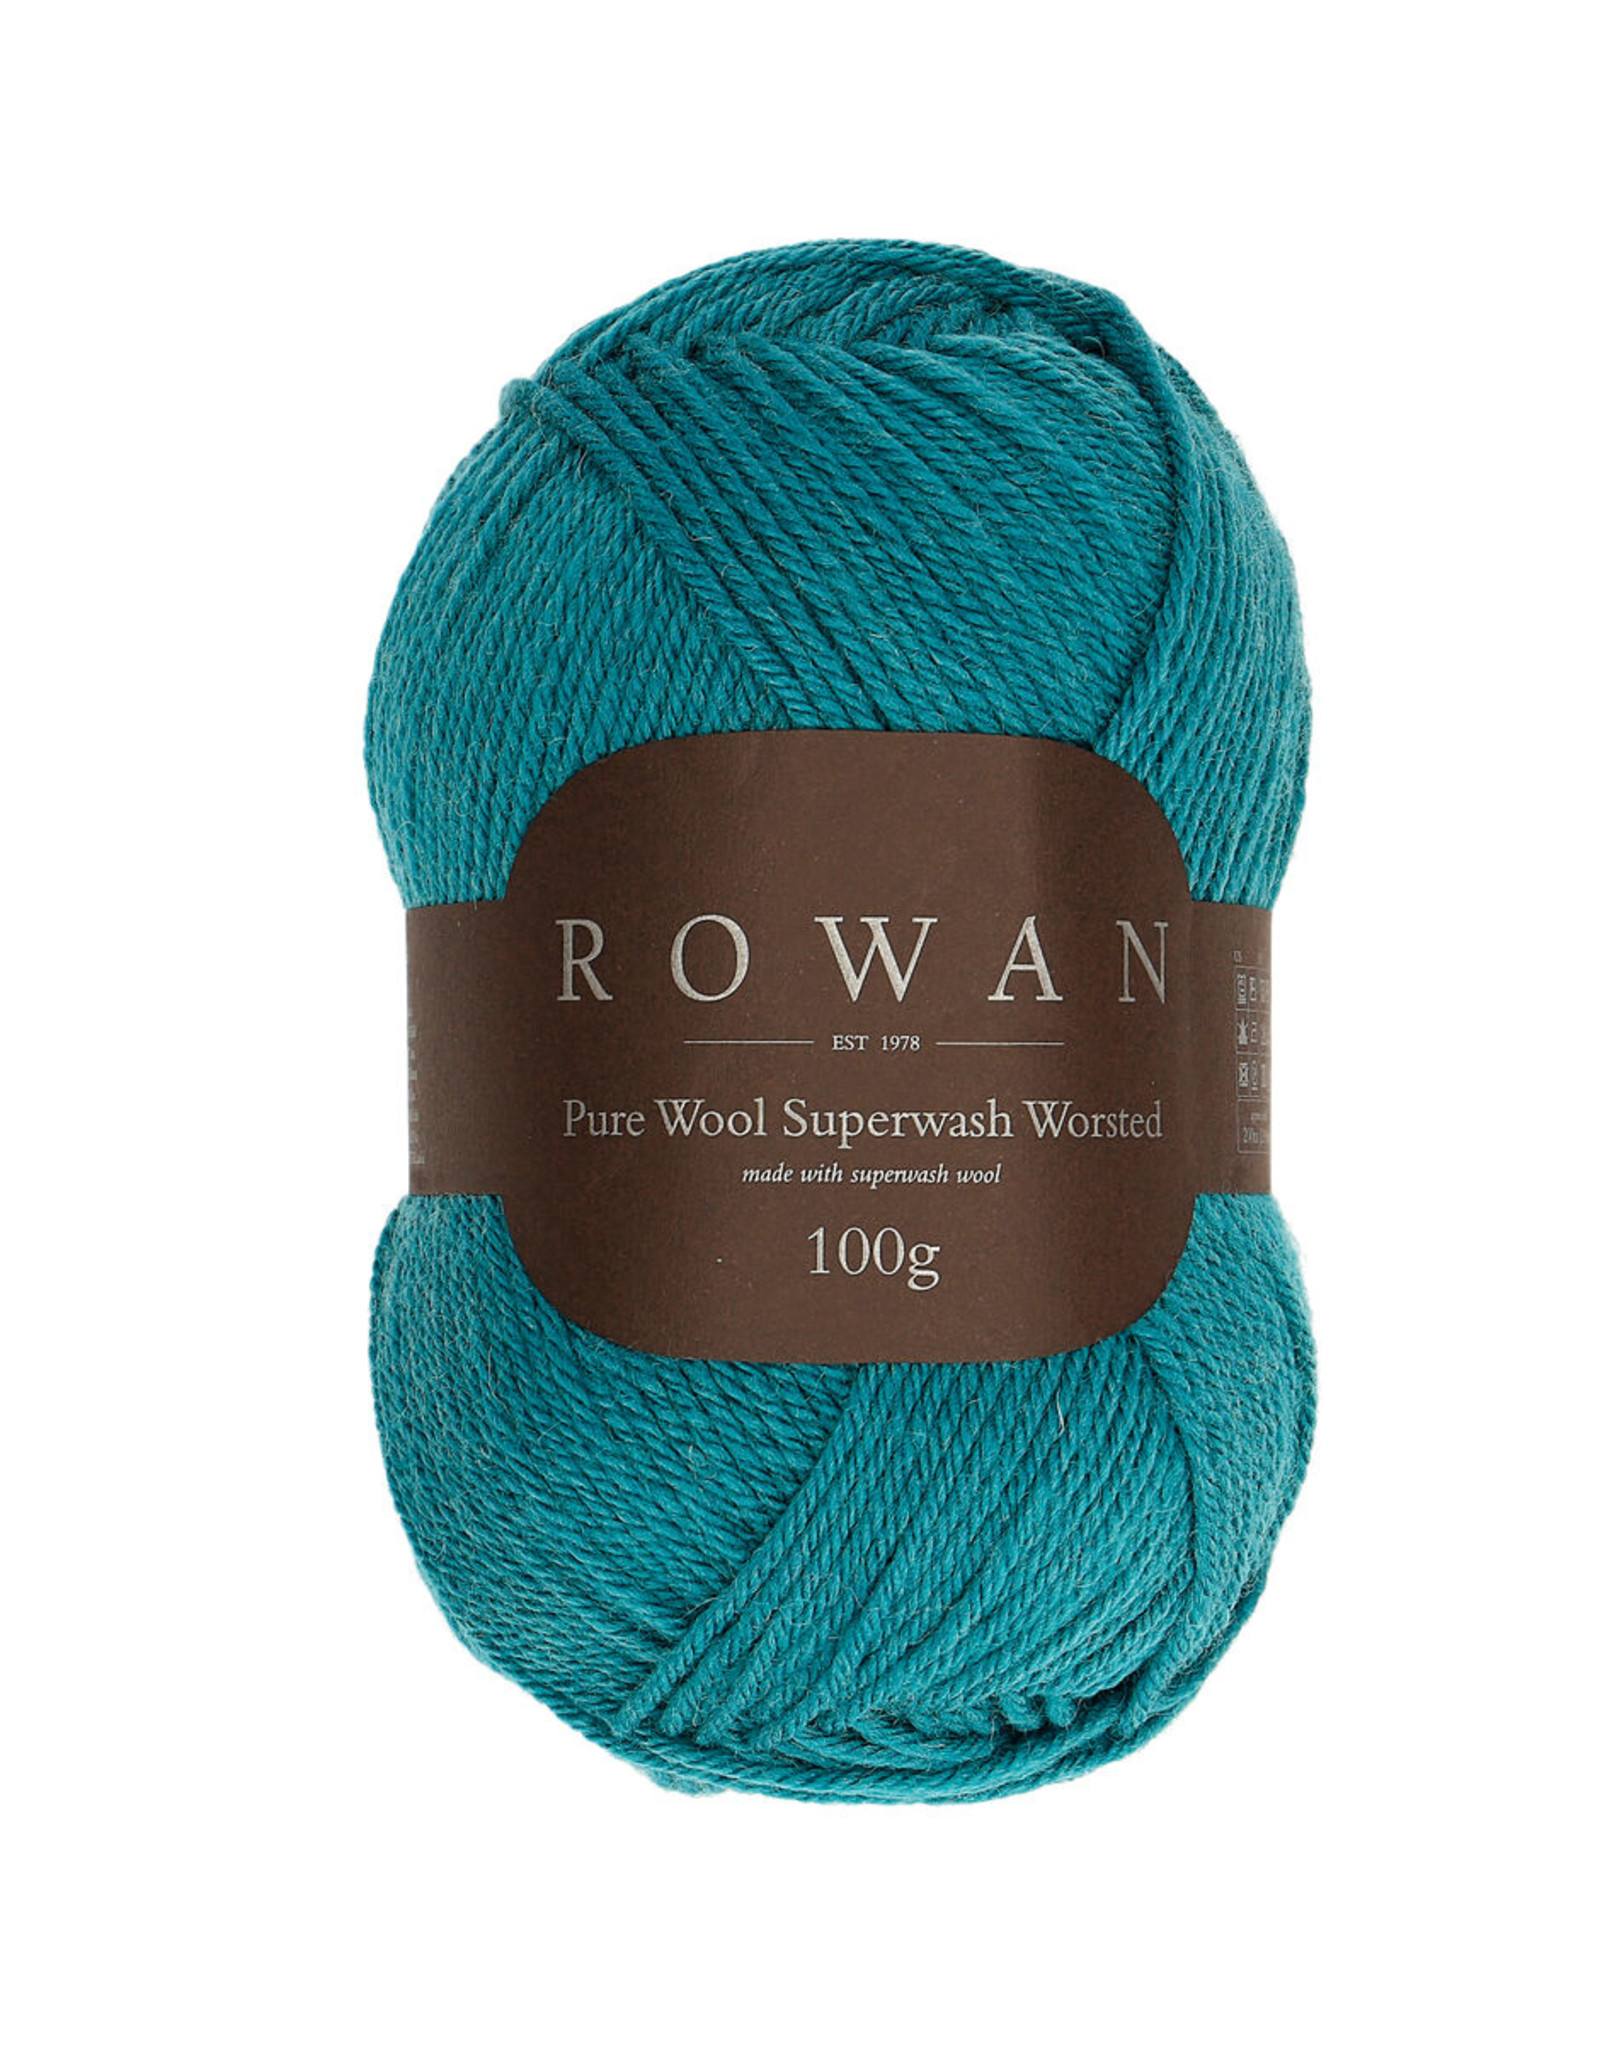 Rowan Pure Wool Superwash Worsted 188 Toffee 